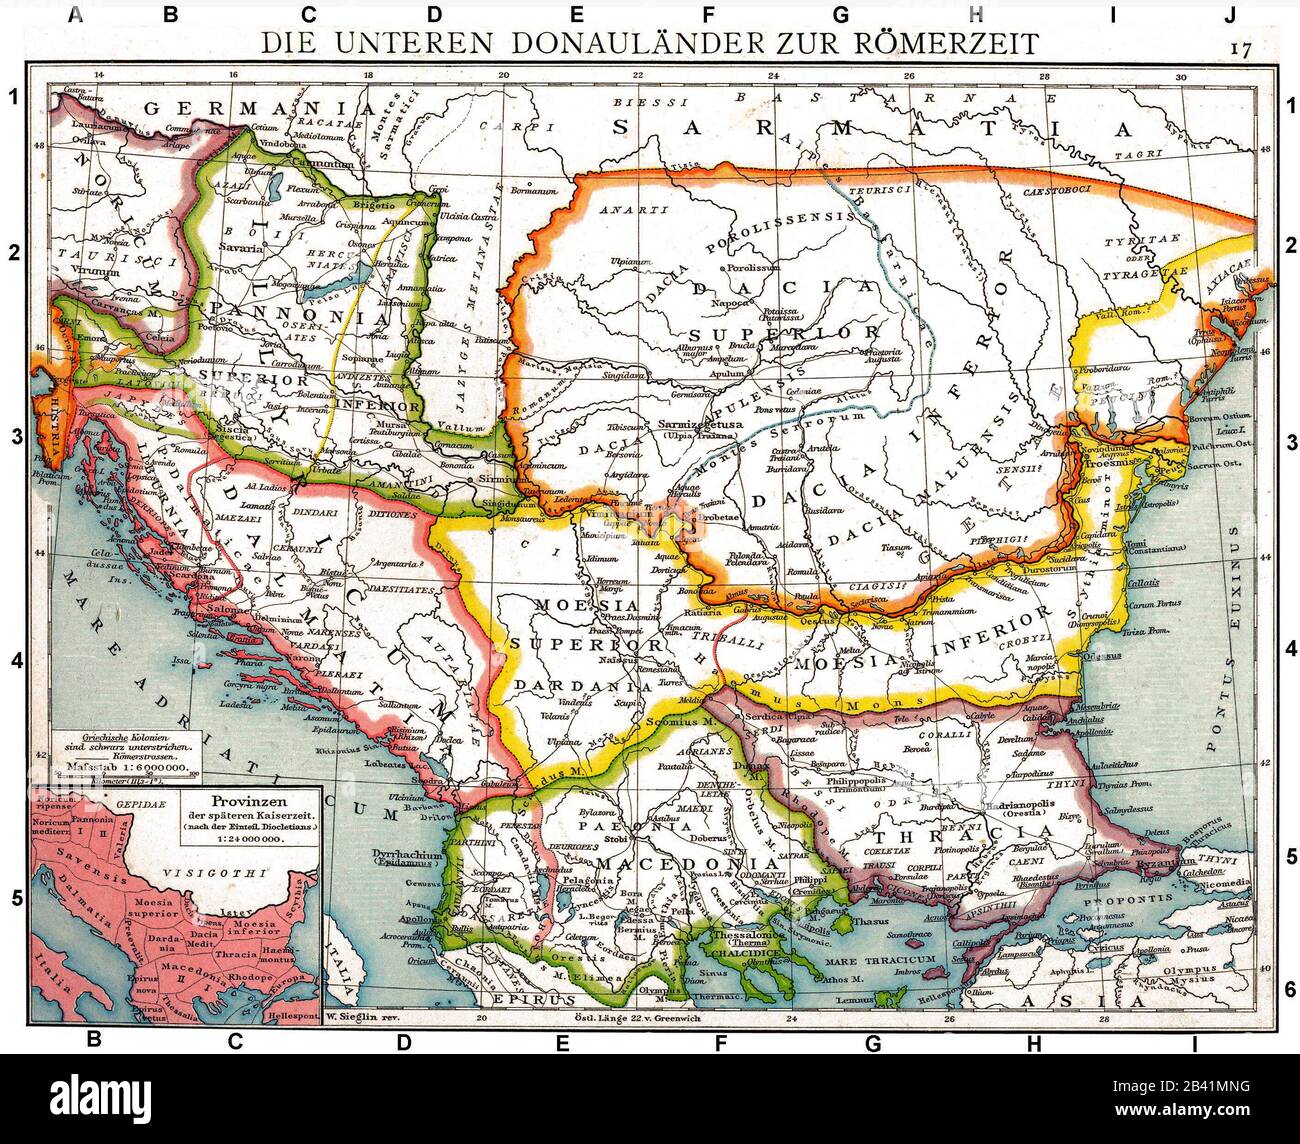 Las provincias romanas Del bajo Danubio. Antiguo mapa histórico del Atlas histórico de Droysens, 1886 Foto de stock